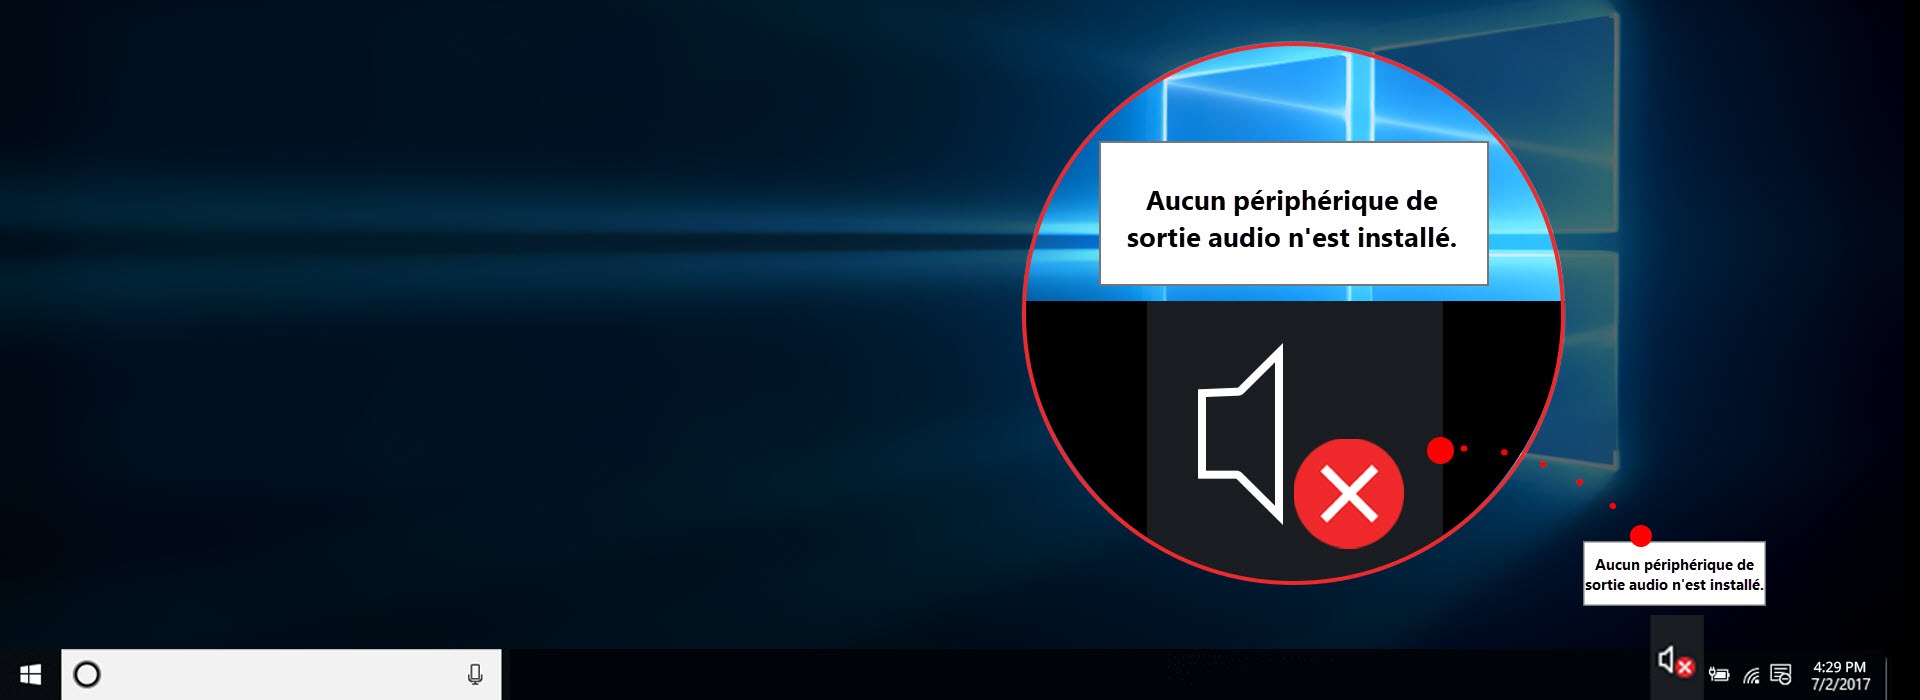 3 Solutions] Aucun périphérique de sortie audio n'est installé - Driver  Easy France